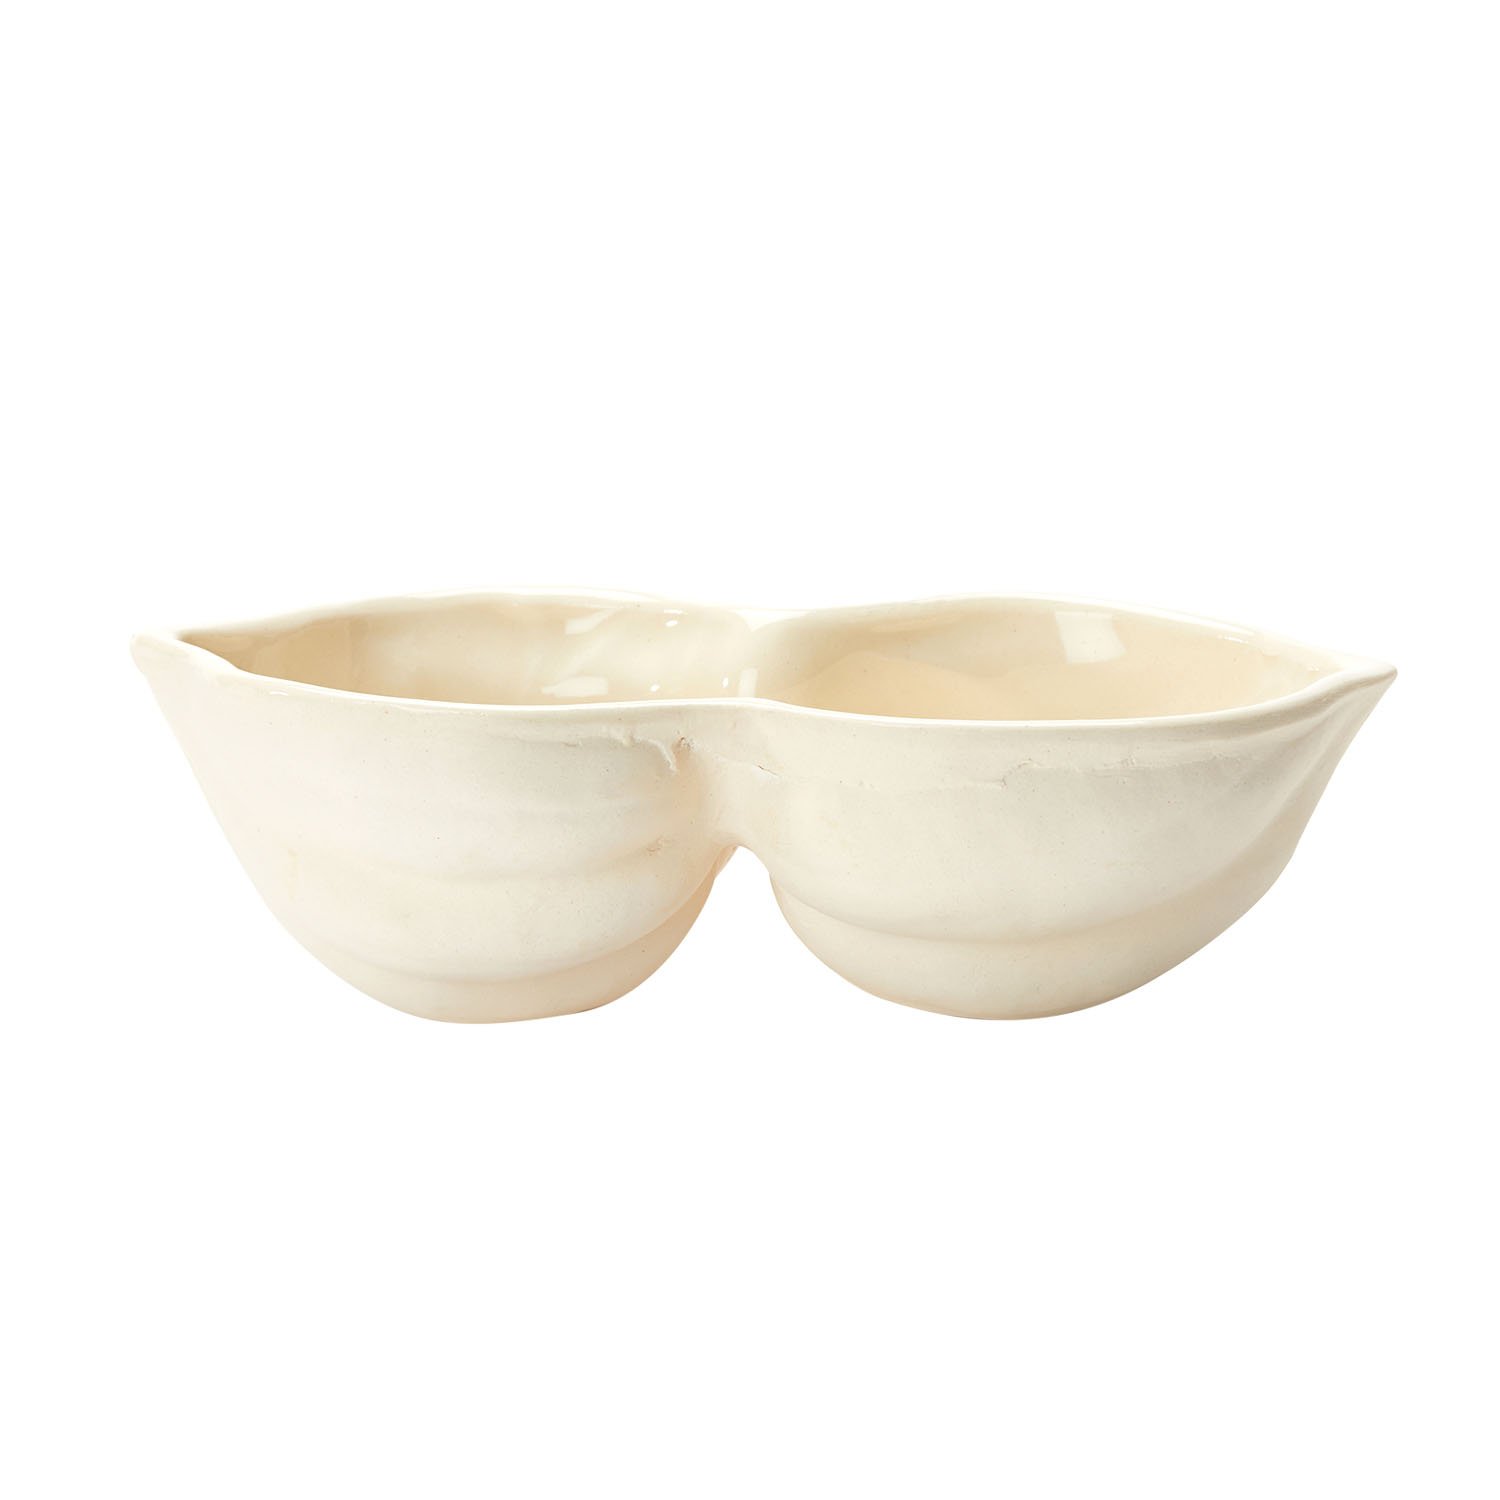 Ceramic Double Acorn Squash Bowl